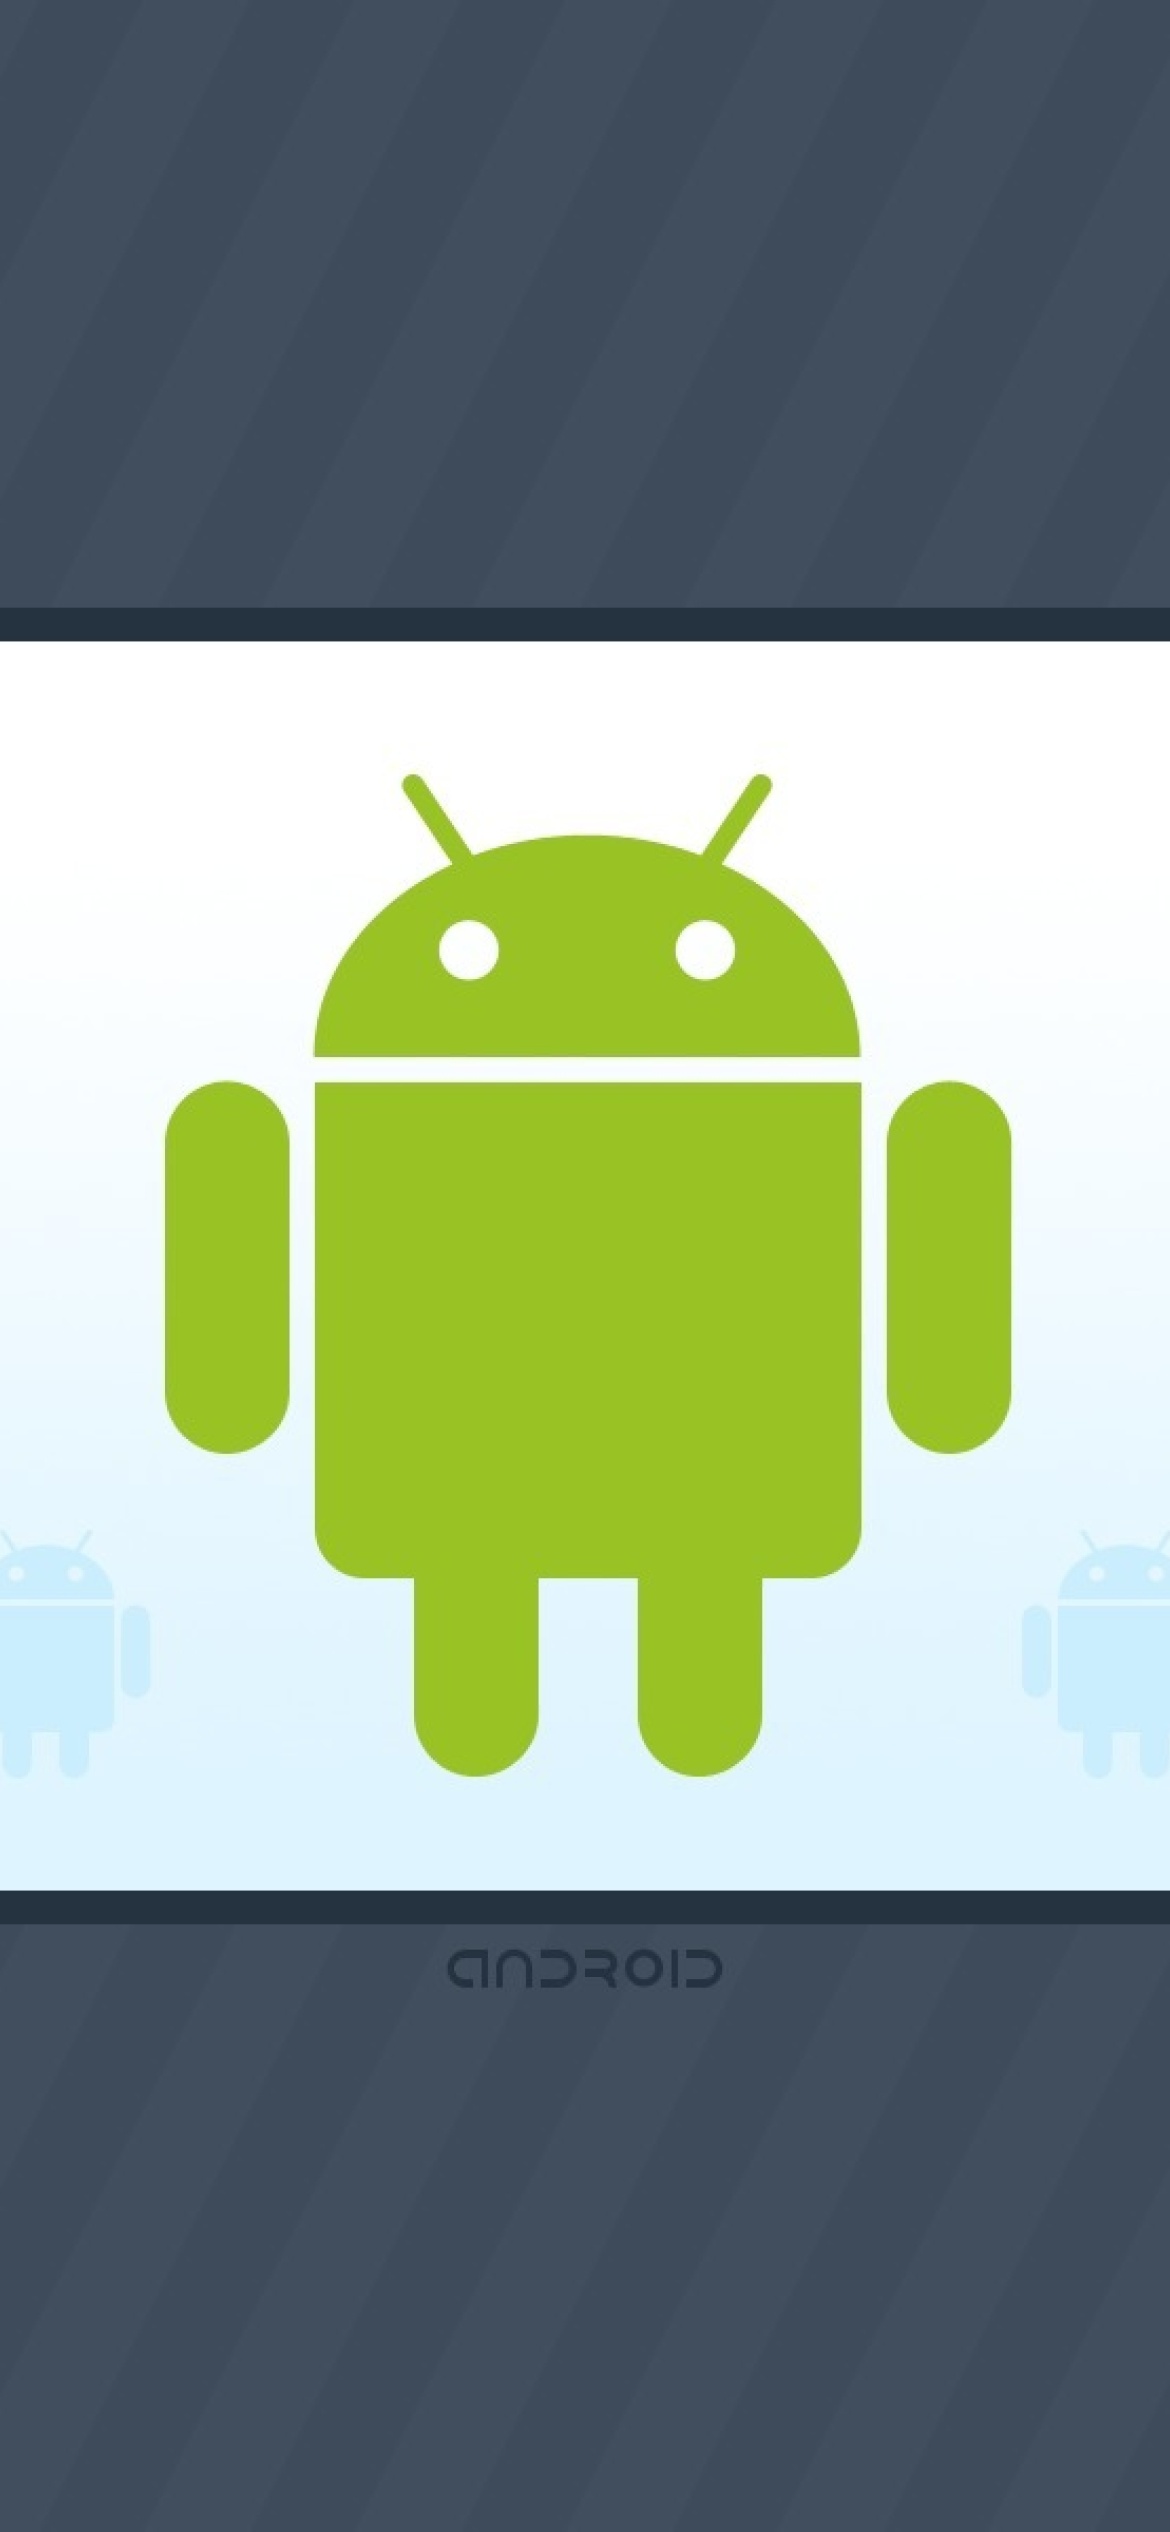 Fondo de pantalla Android Phone Logo 1170x2532